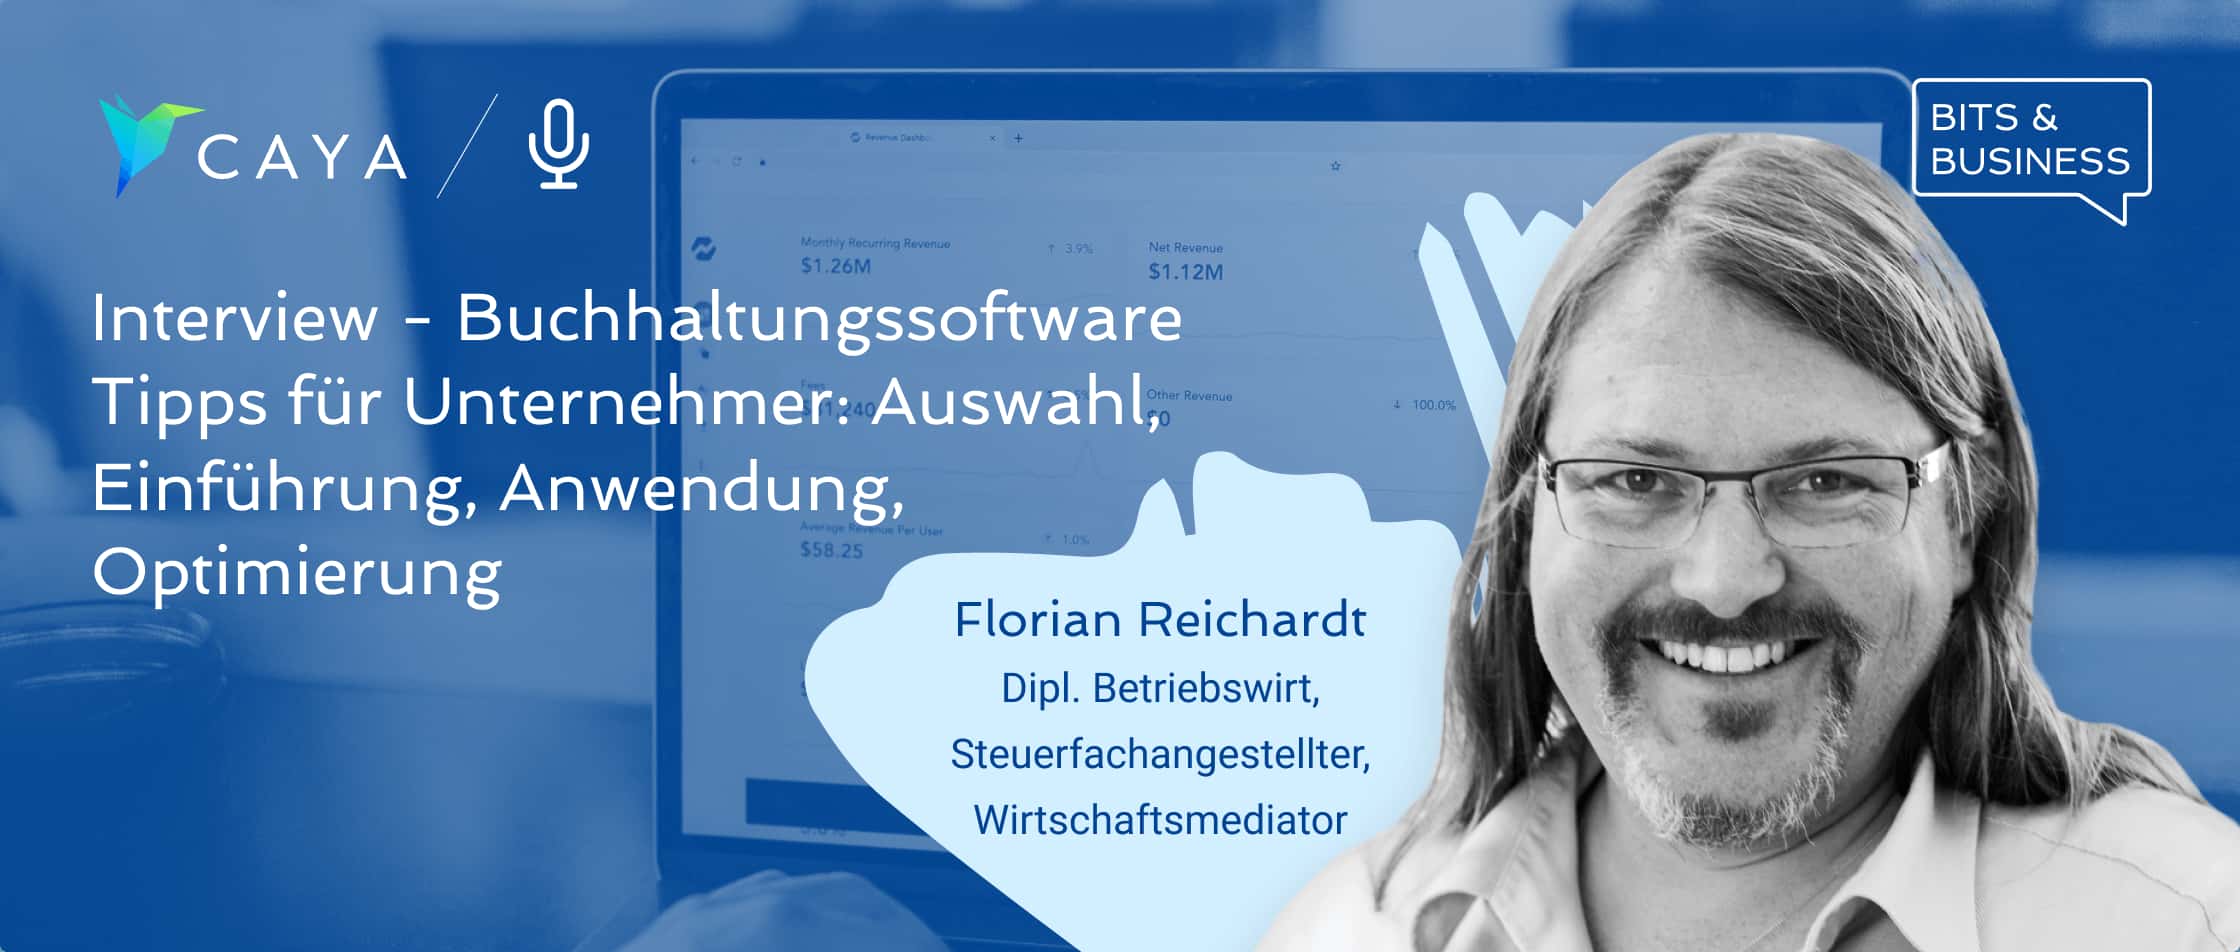 Buchhaltung als KMU optimieren & automatisieren - Buchhalter Florian Reichardt im Interview